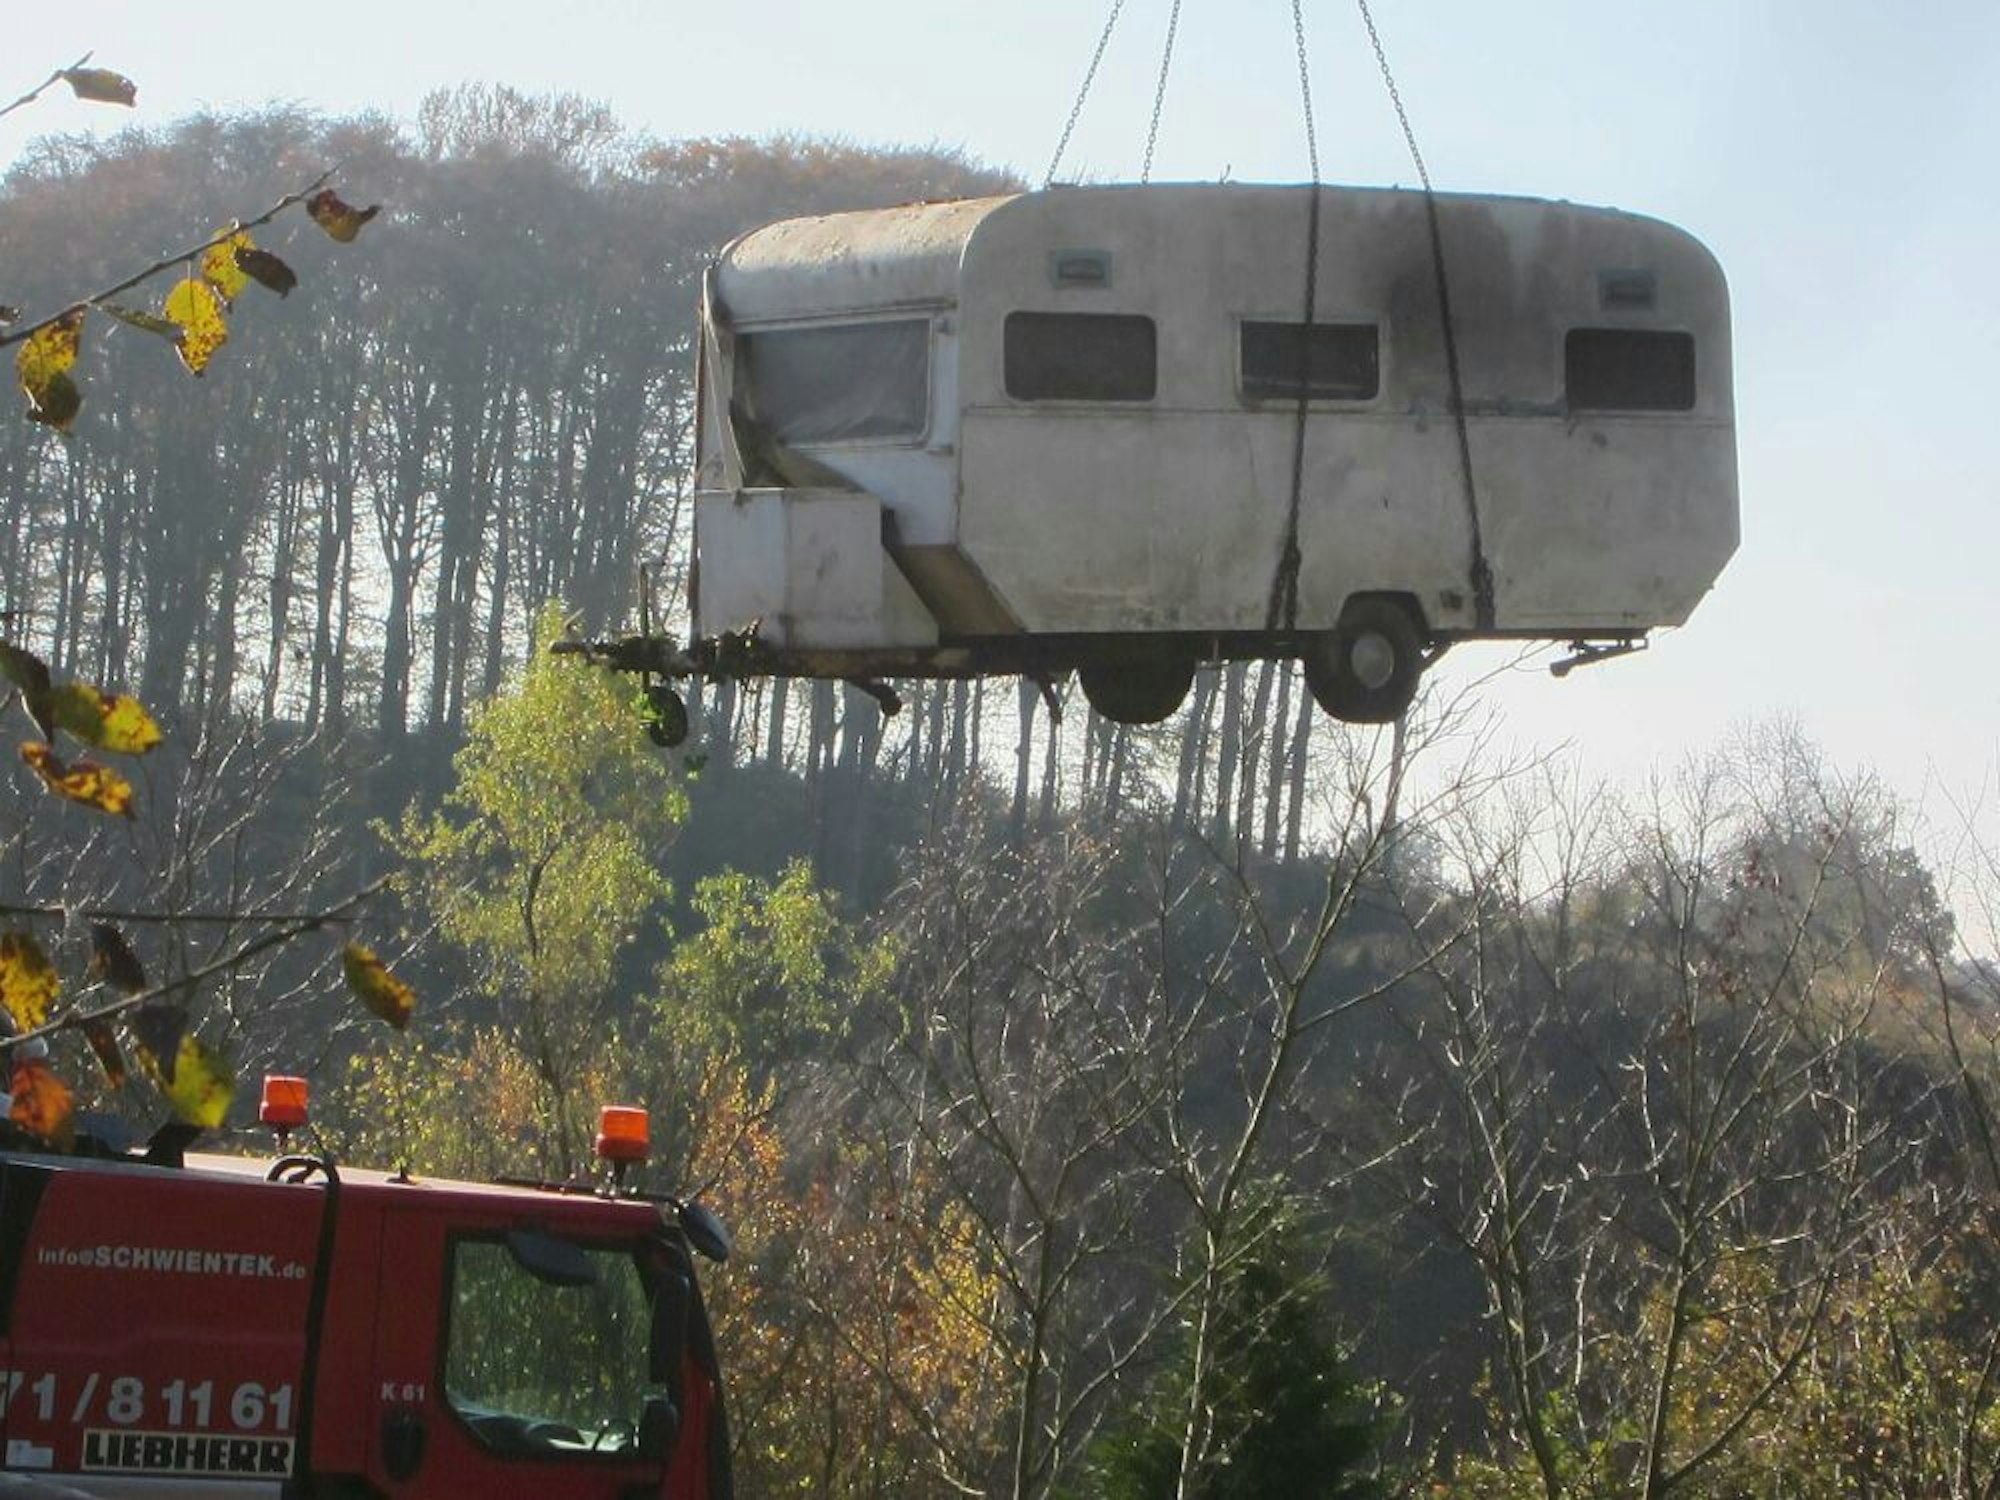 Ende des Campingplatzes: Der letzte Wohnwagen ist im Herbst von einem Kranwagen abtransportiert worden.